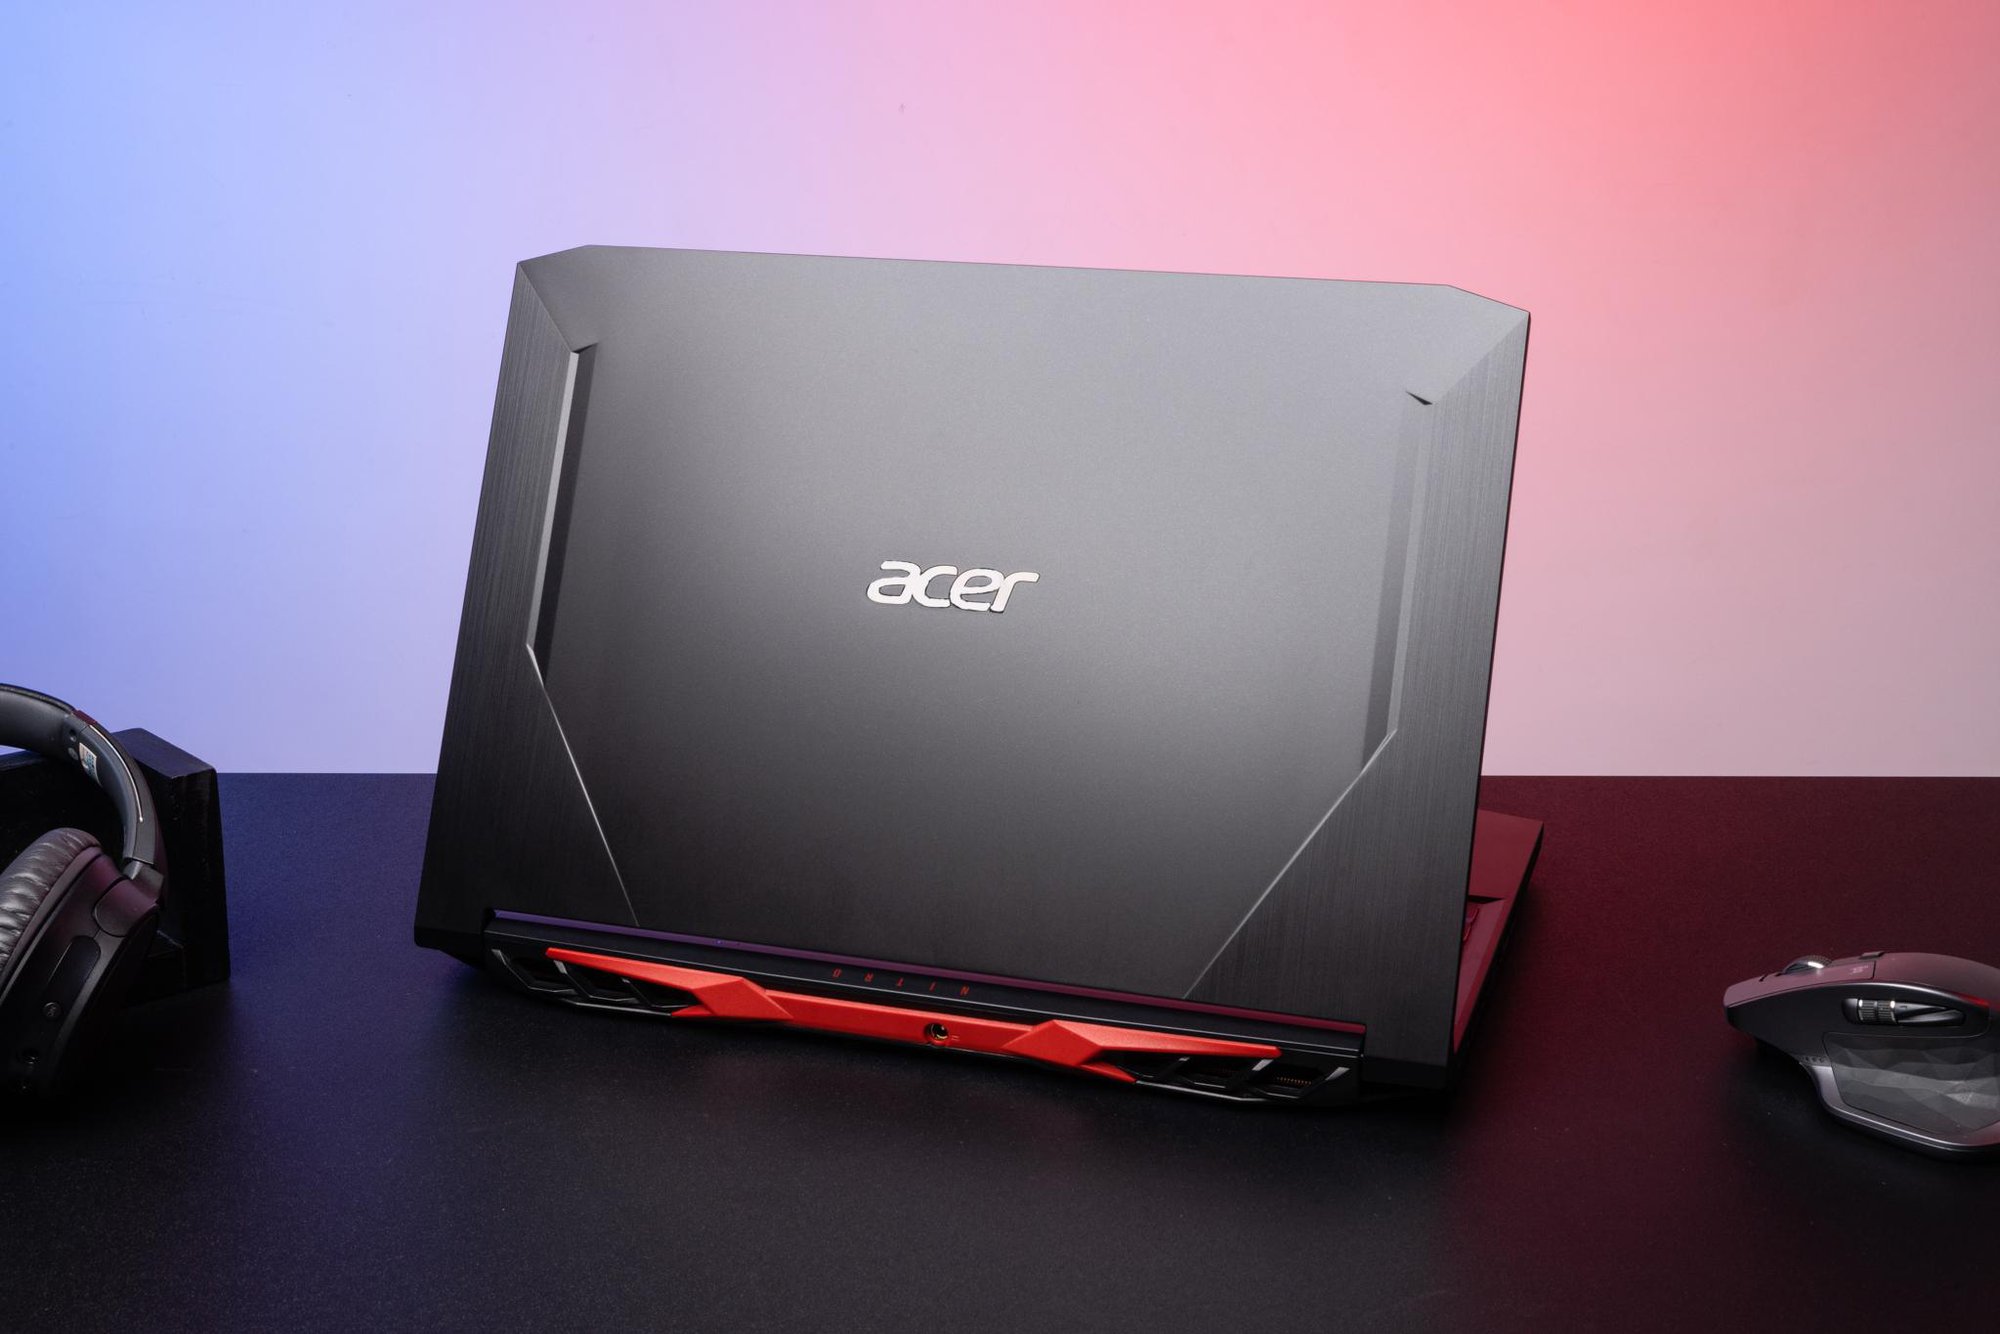 Thế Giới Di Động lì xì laptop Acer cực chất cho bạn phất cả năm - Ảnh 3.